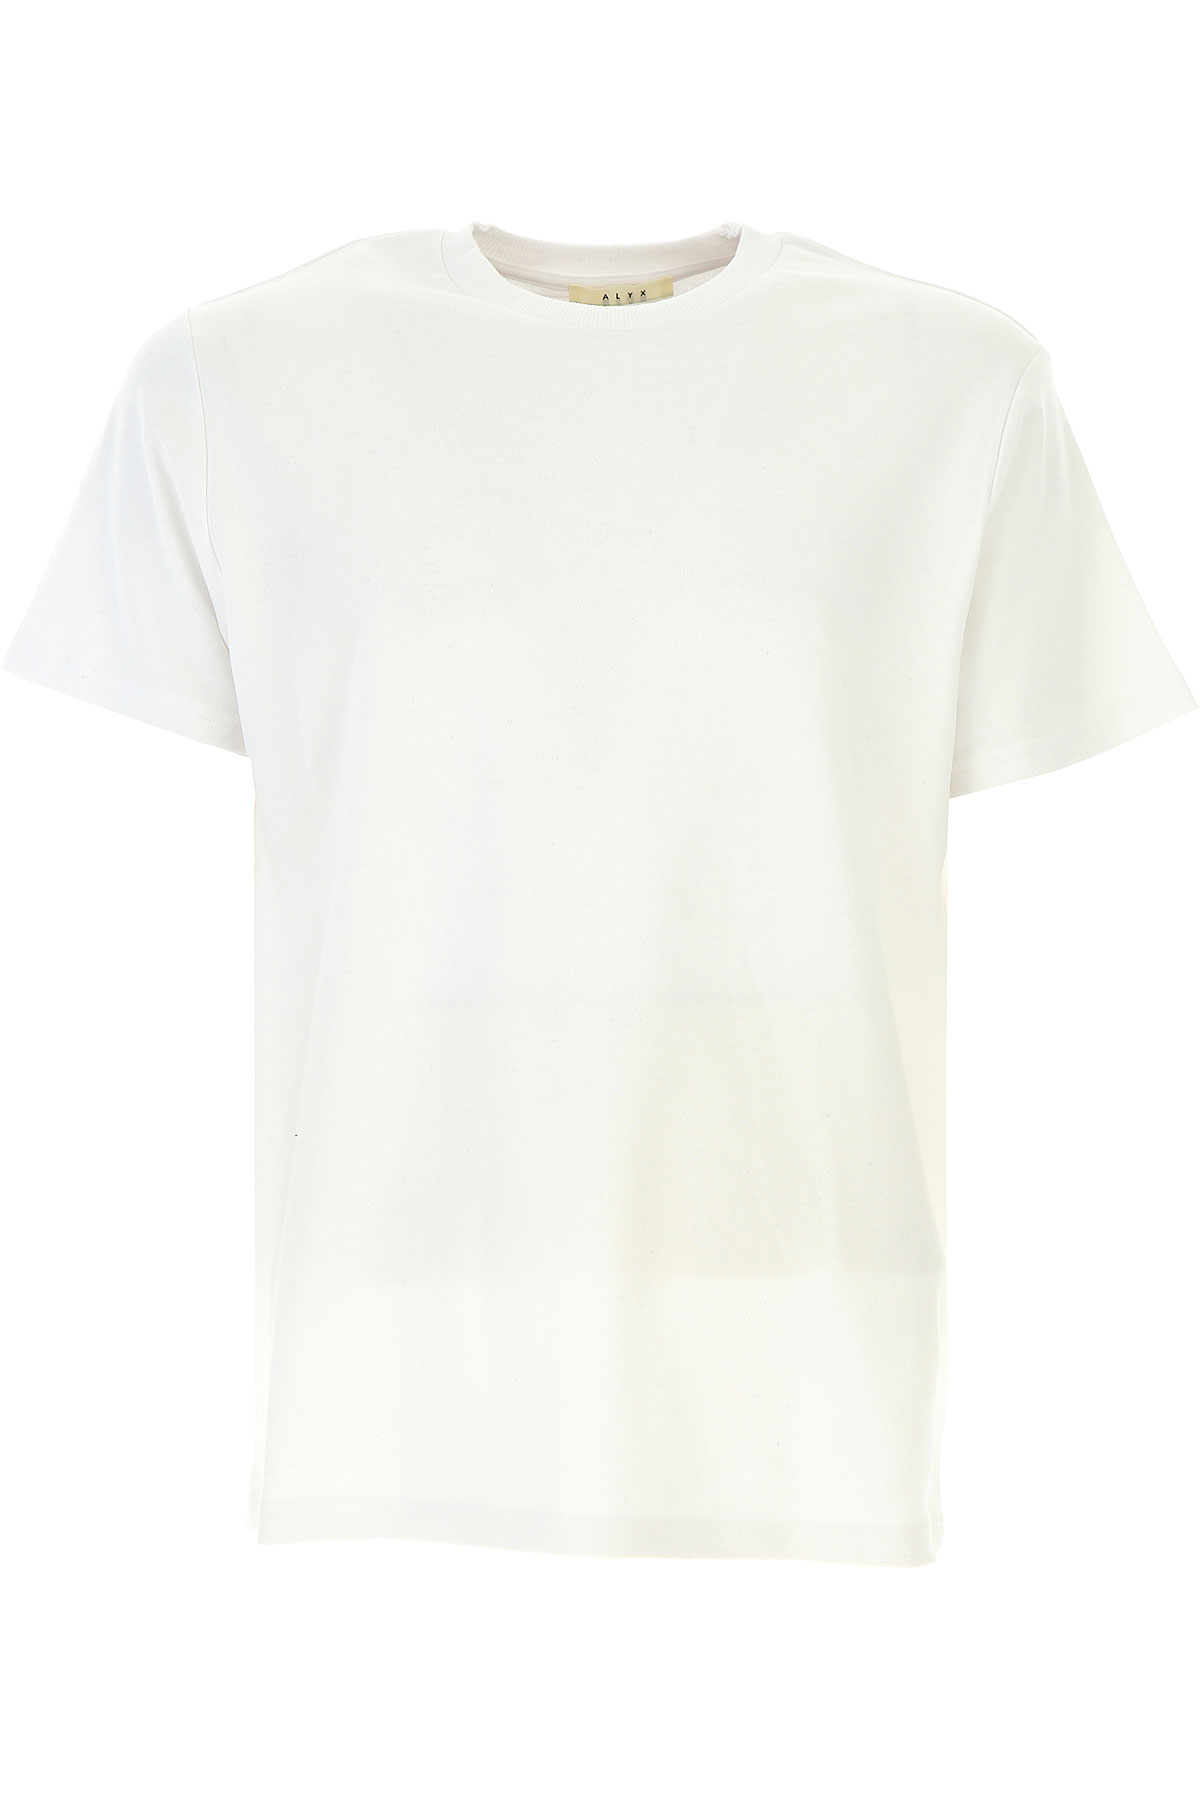 ALYX T-shirt Homme , Blanc, Coton, 2017, M S XS